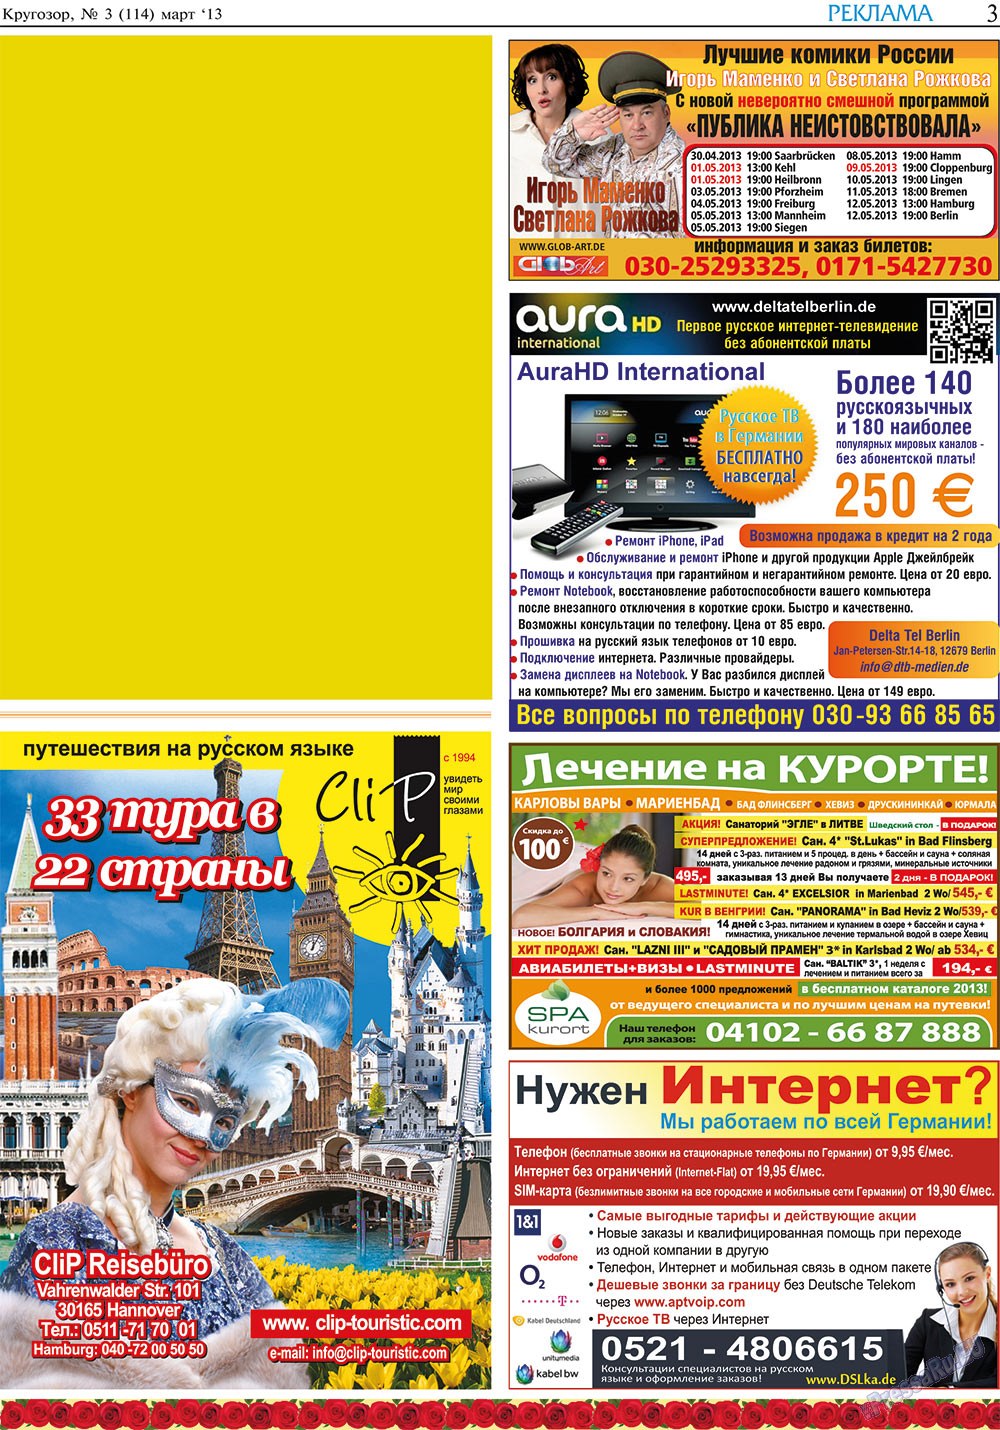 Кругозор, газета. 2013 №3 стр.3